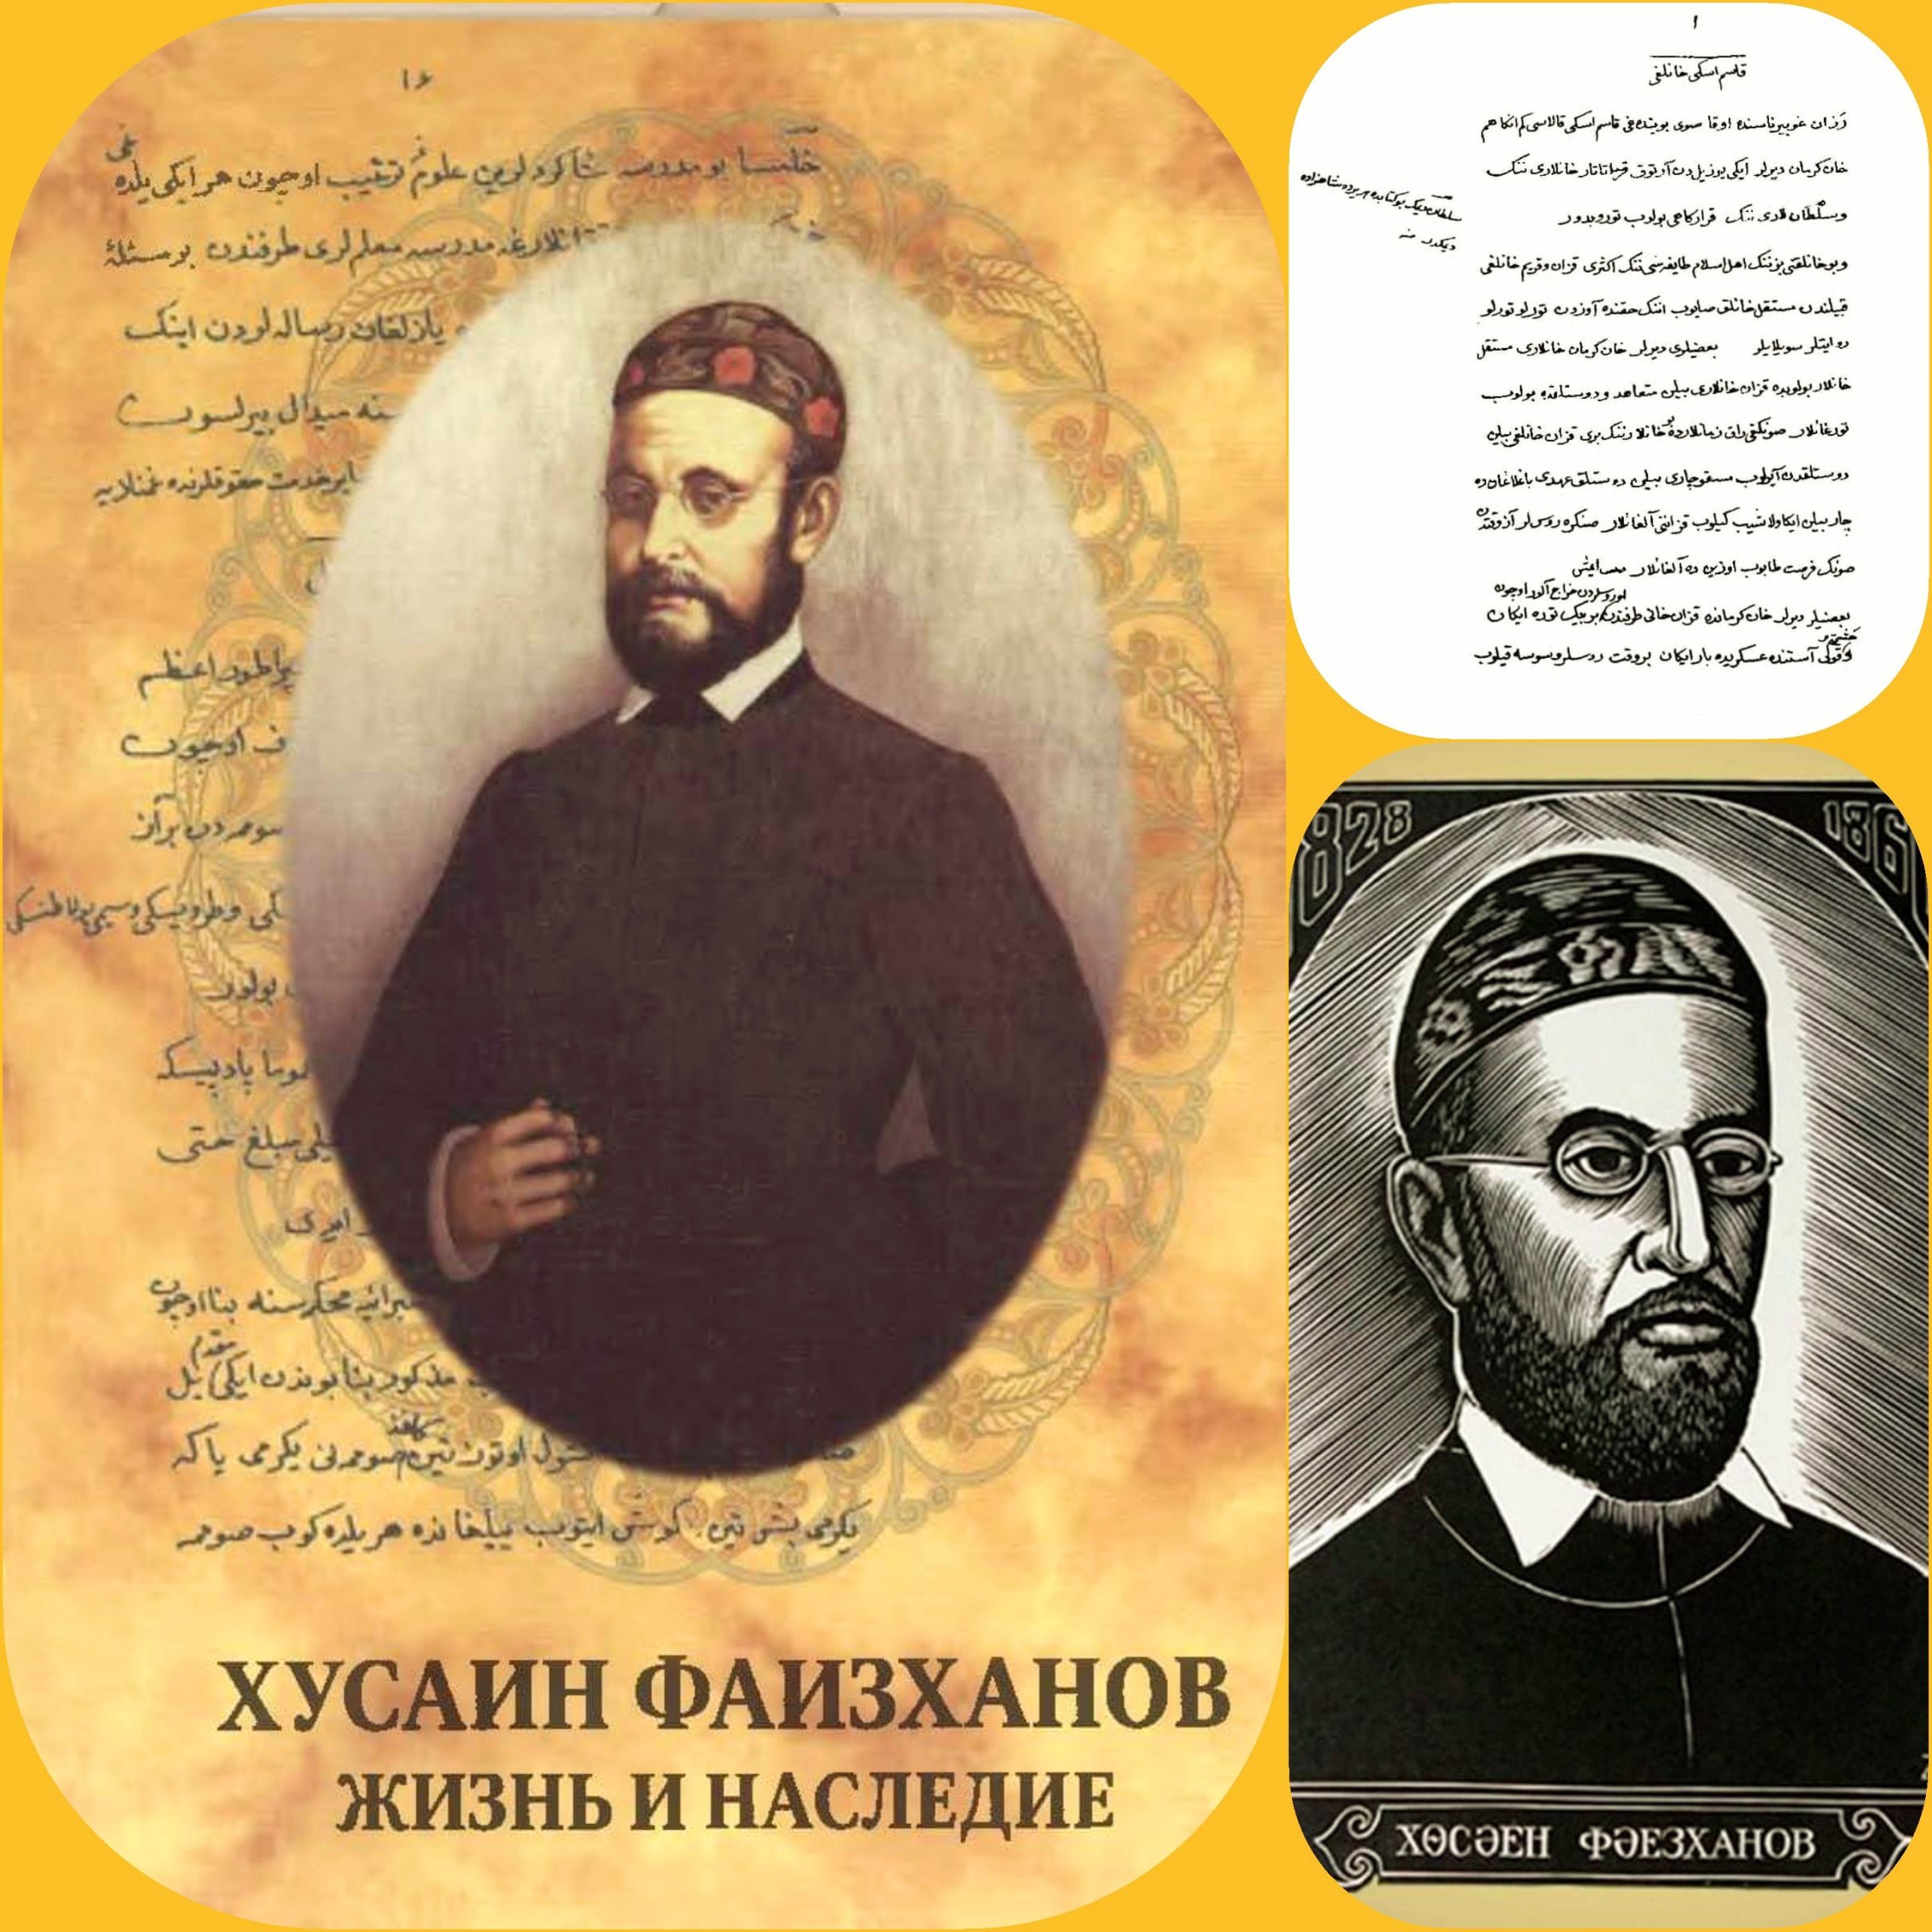 يعد حسن فيض خان أحد مُمثلي الحركة الإصلاحية التجديدية بين مسلمي روسيا التي تشكلت مع مطلع القرن التاسع عشر.